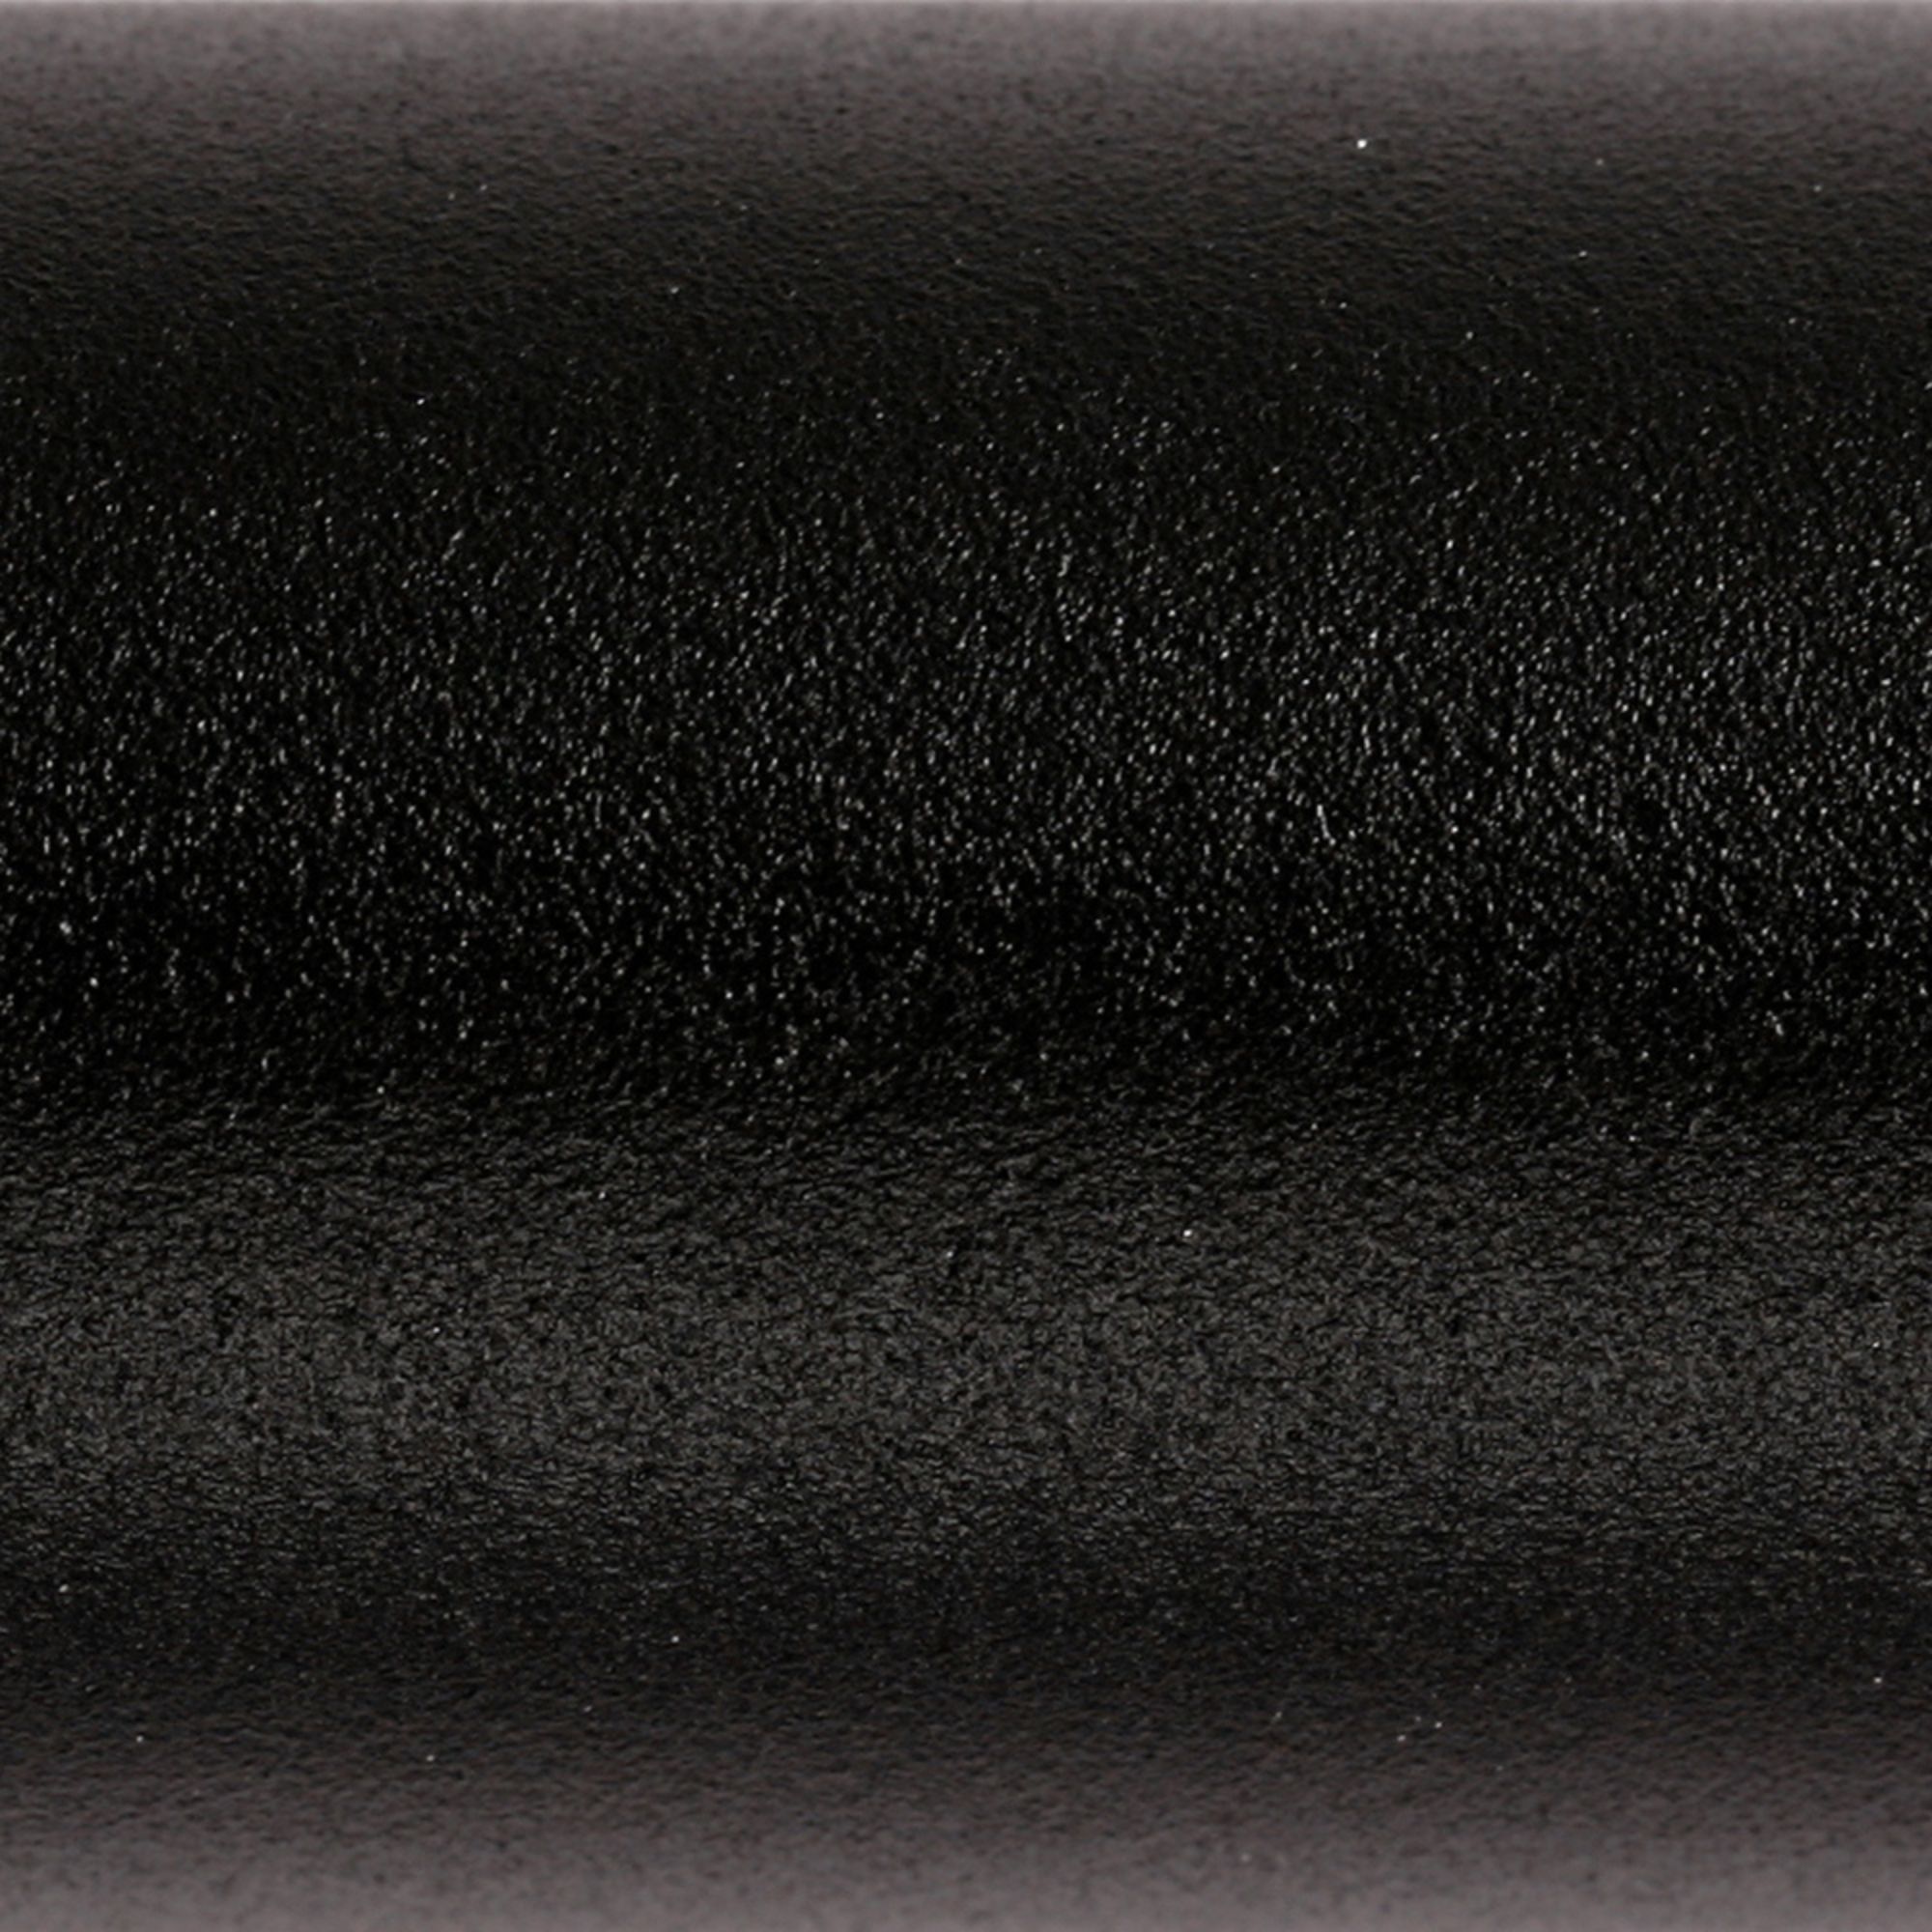 Terma Black Flat Towel warmer (W)500mm x (H)1440mm